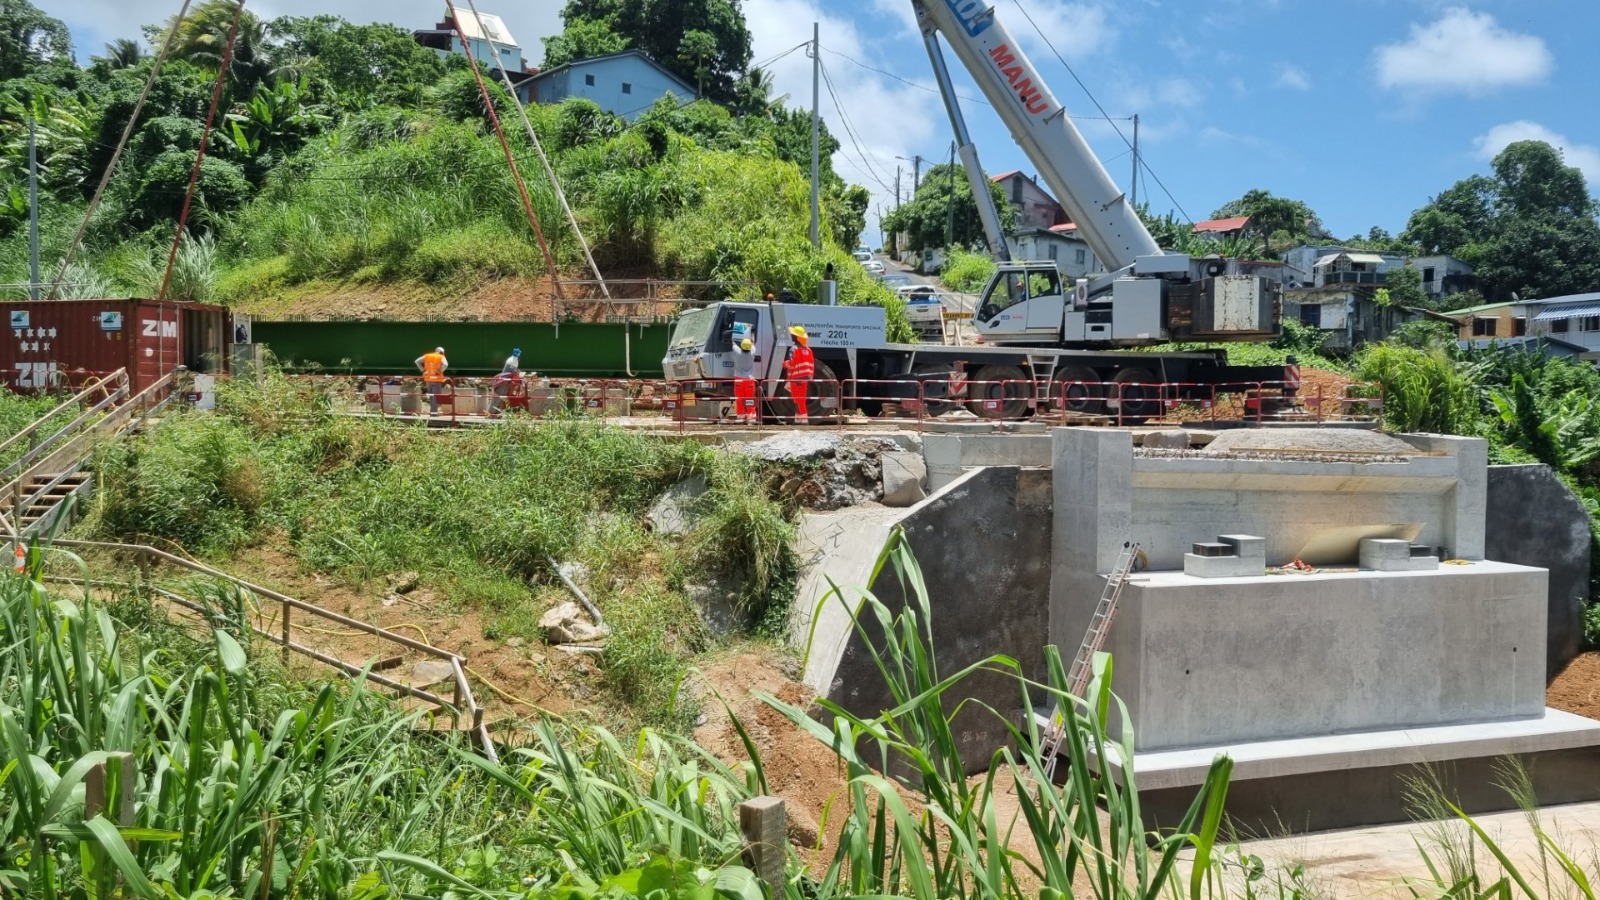     Près de 5 millions d'euros de travaux pour la reconstruction du pont de Ravine Source

